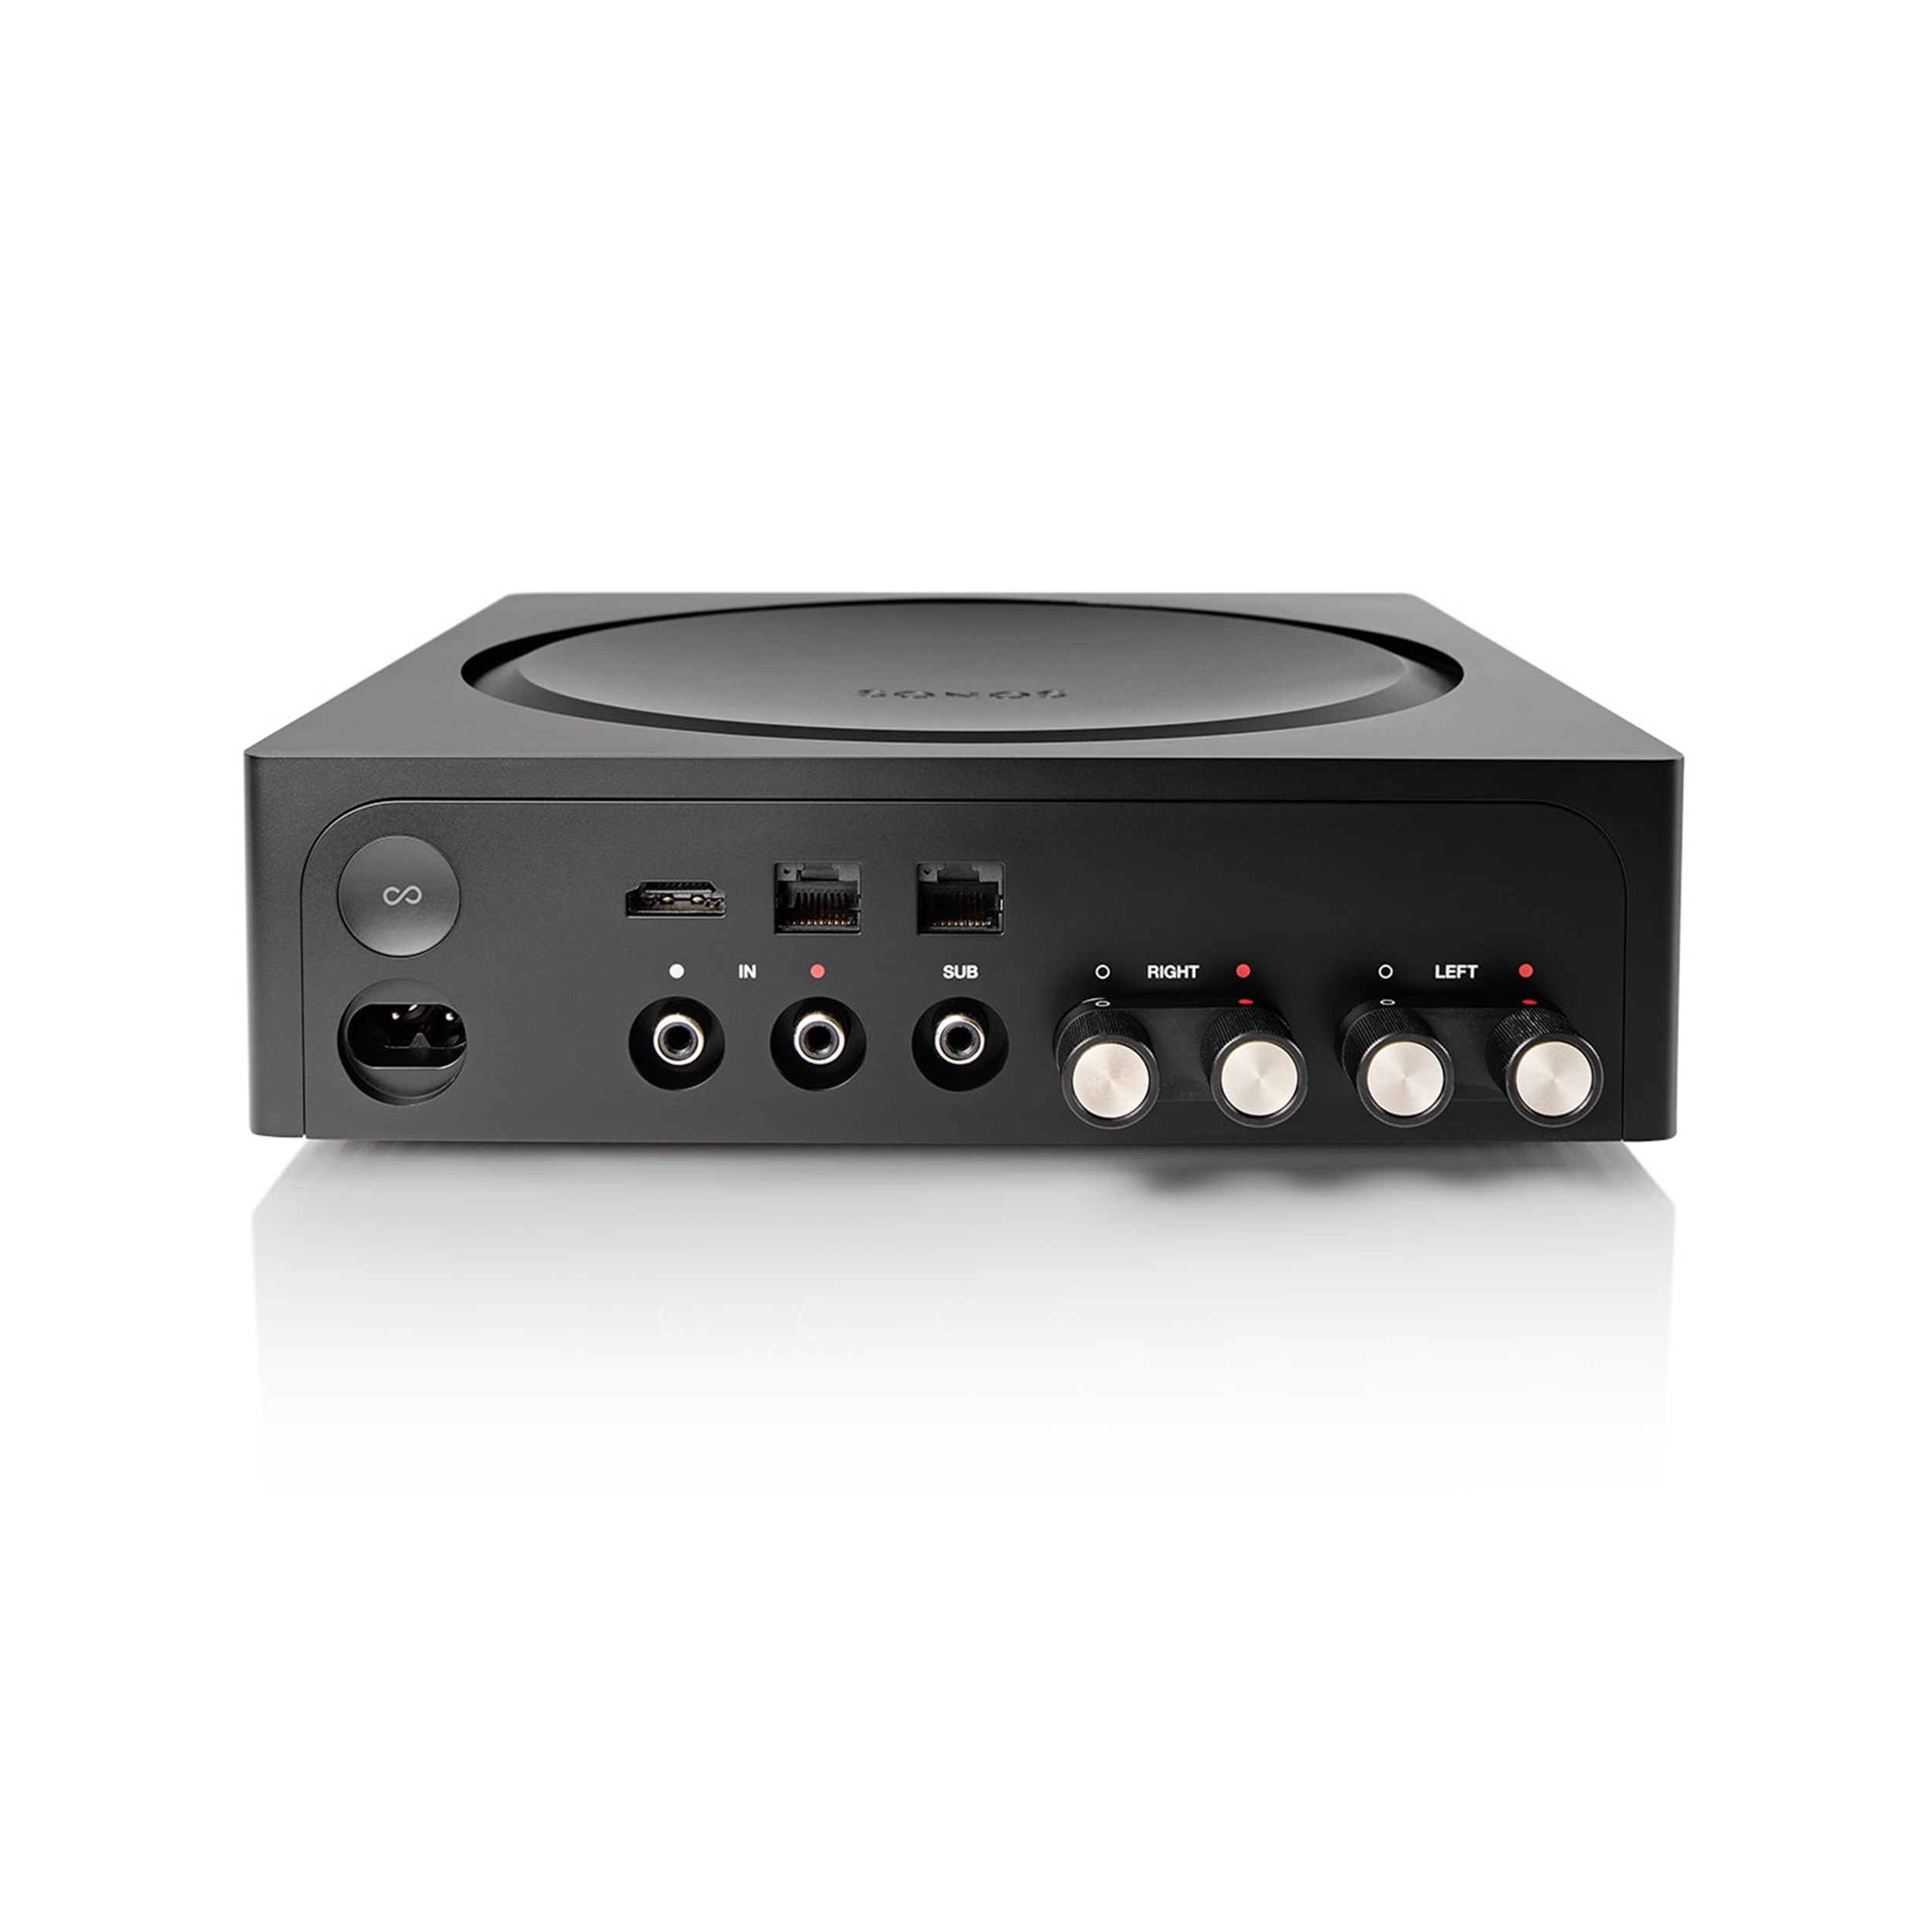 tweeling Norm buik Sonos Amp –multiroomstreaming en massief TV-geluid via HDMI